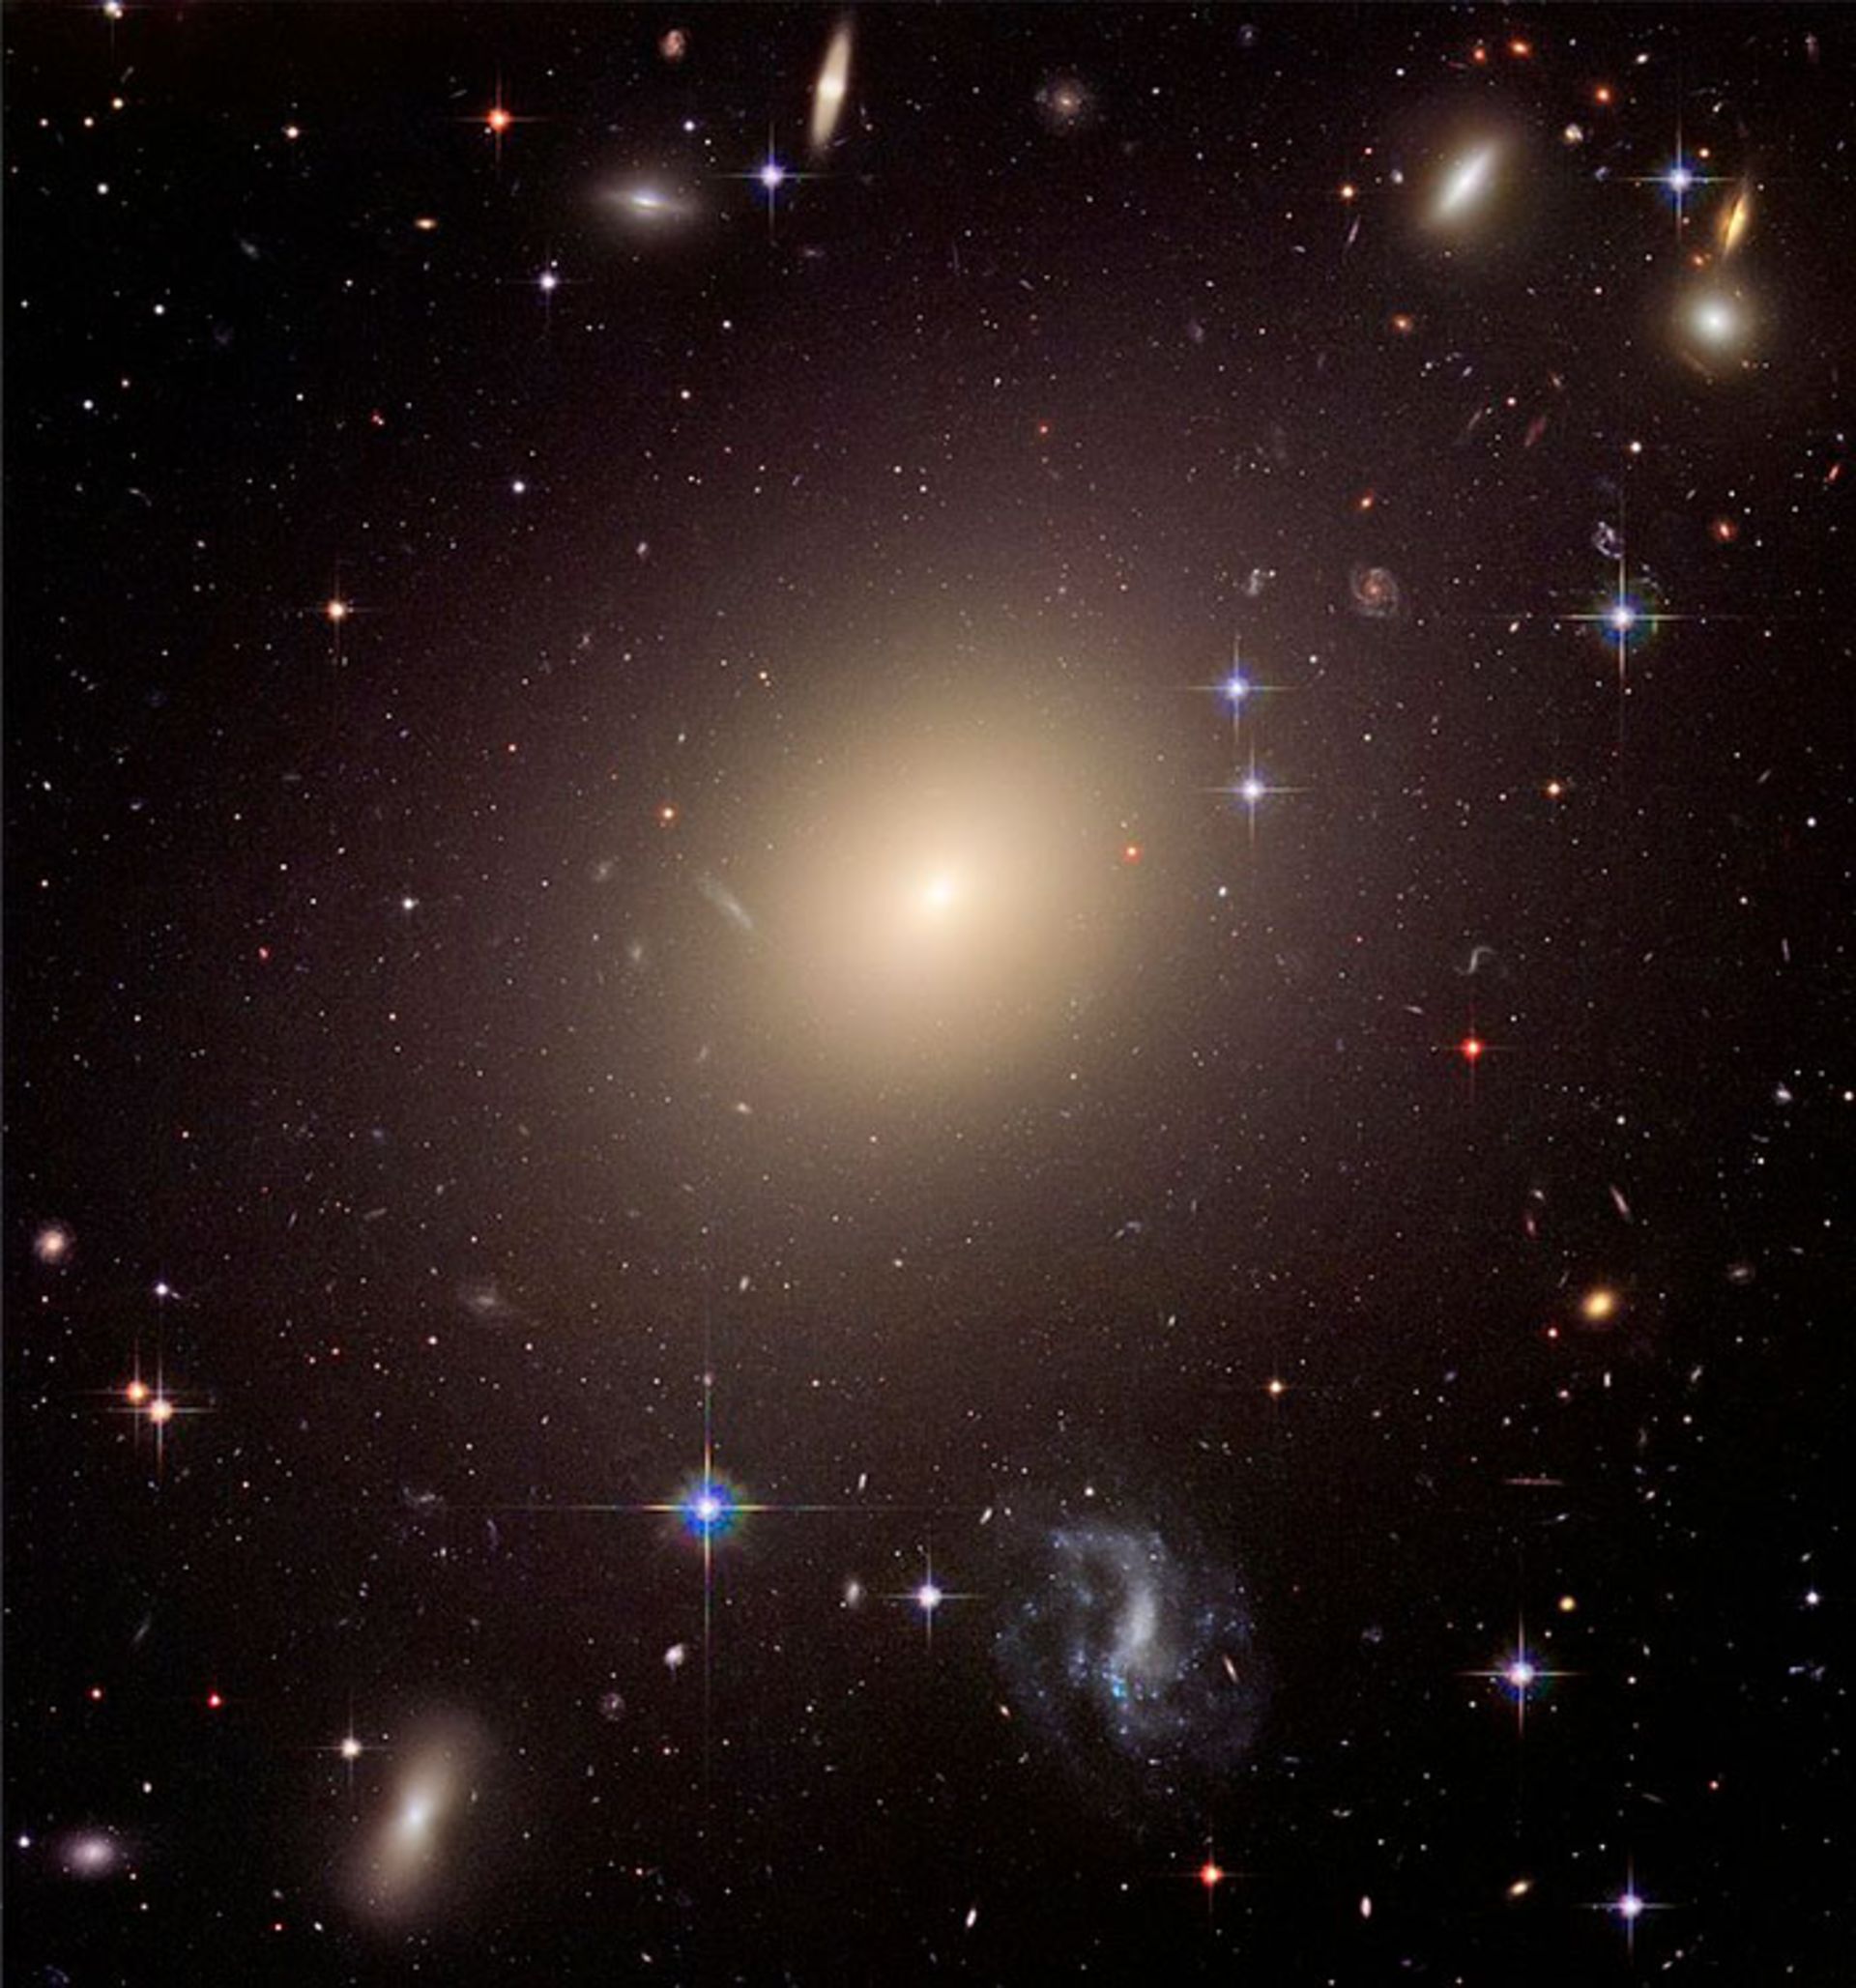 Giant elliptical galaxy